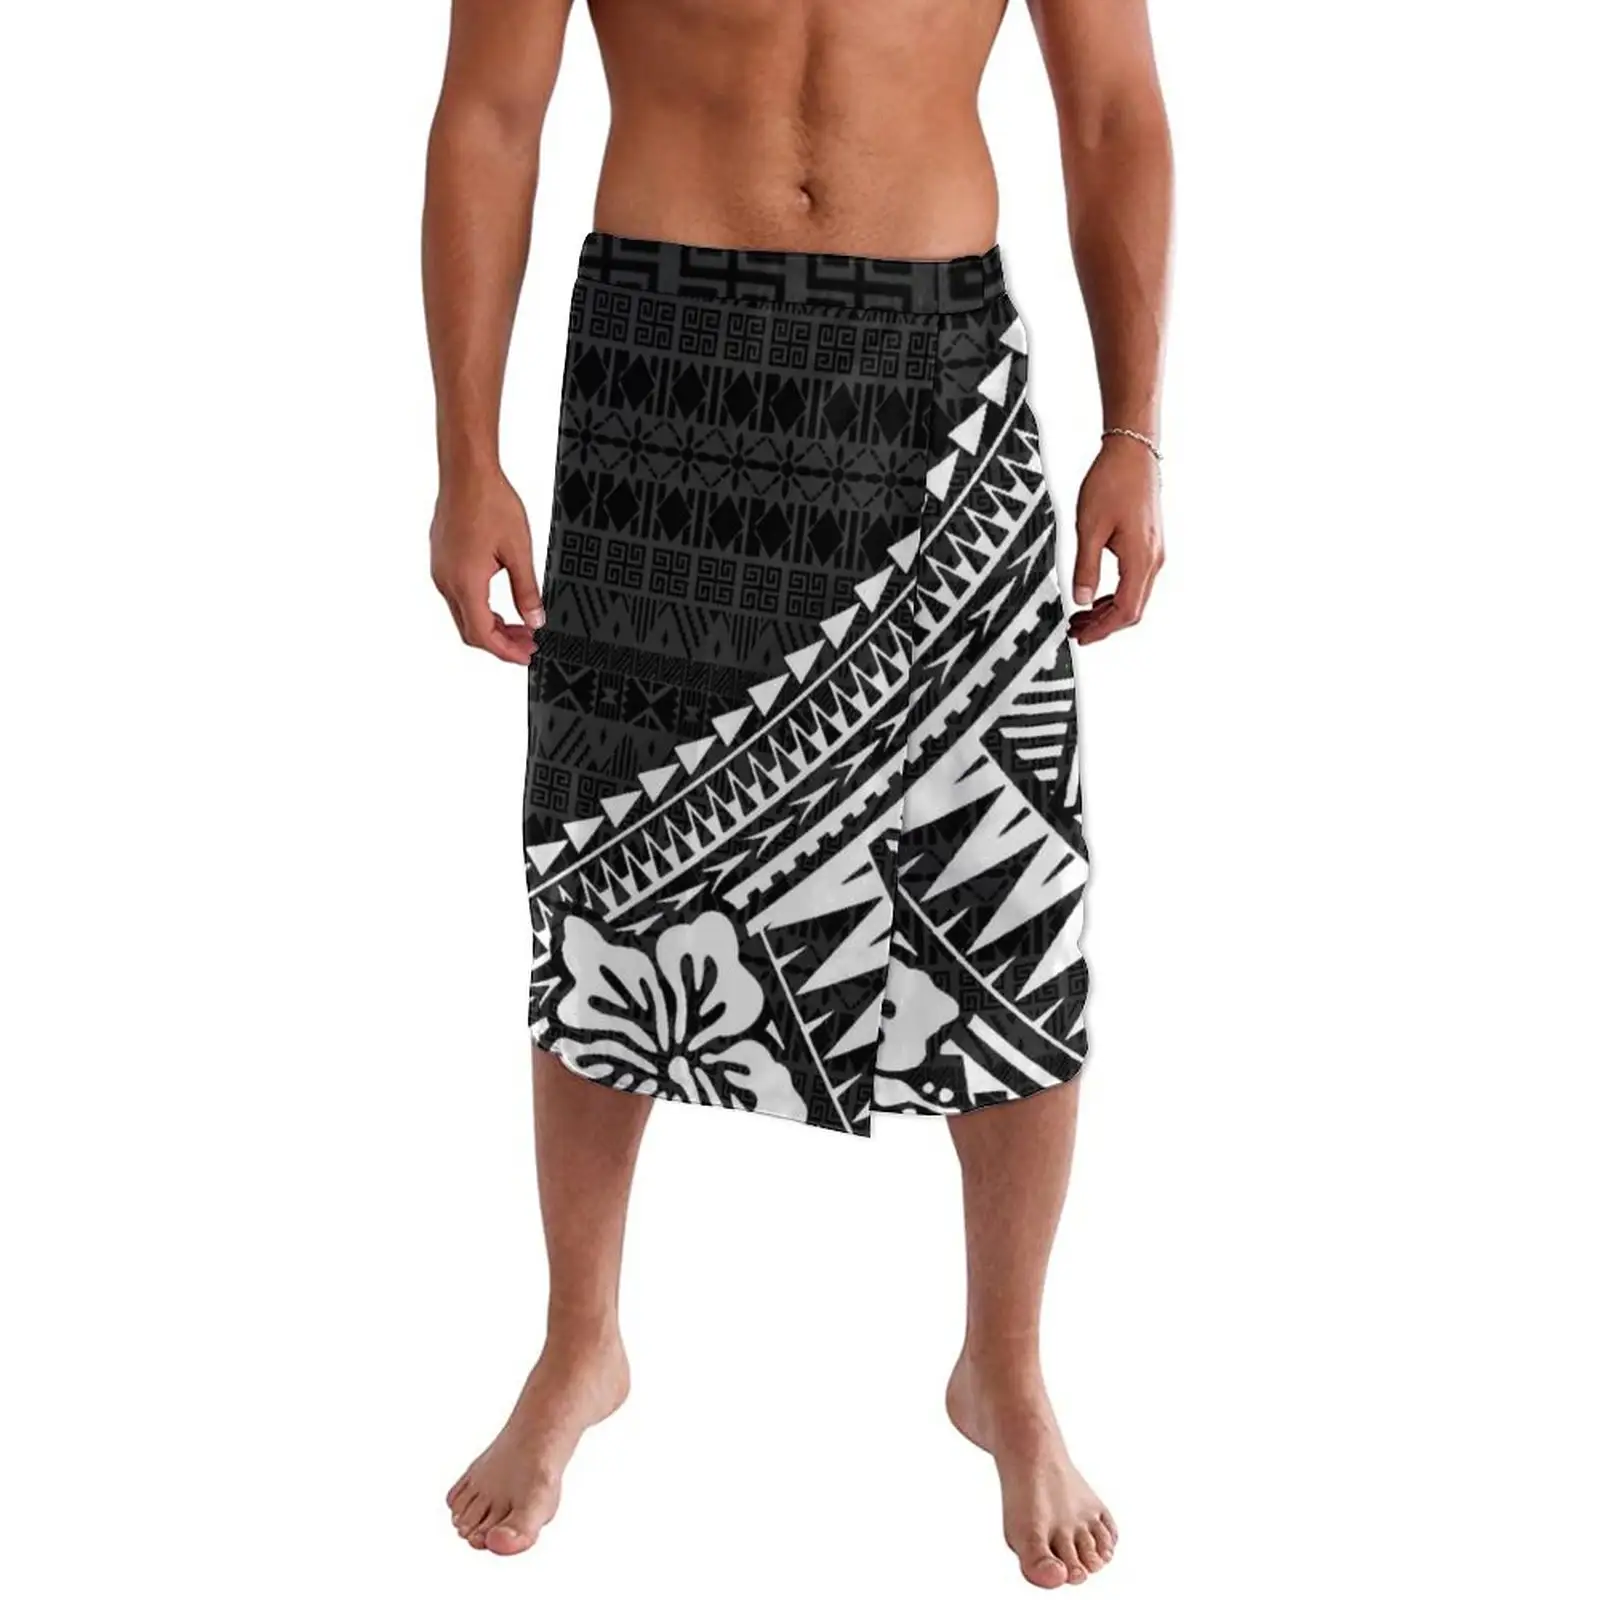 Tonga Fiji Samoan Polynesian Tattoo Printed Lavalava Customize Black Tatau Ie Faitaga Tupenu Mens Swimsuit Mens Wrap Skirt